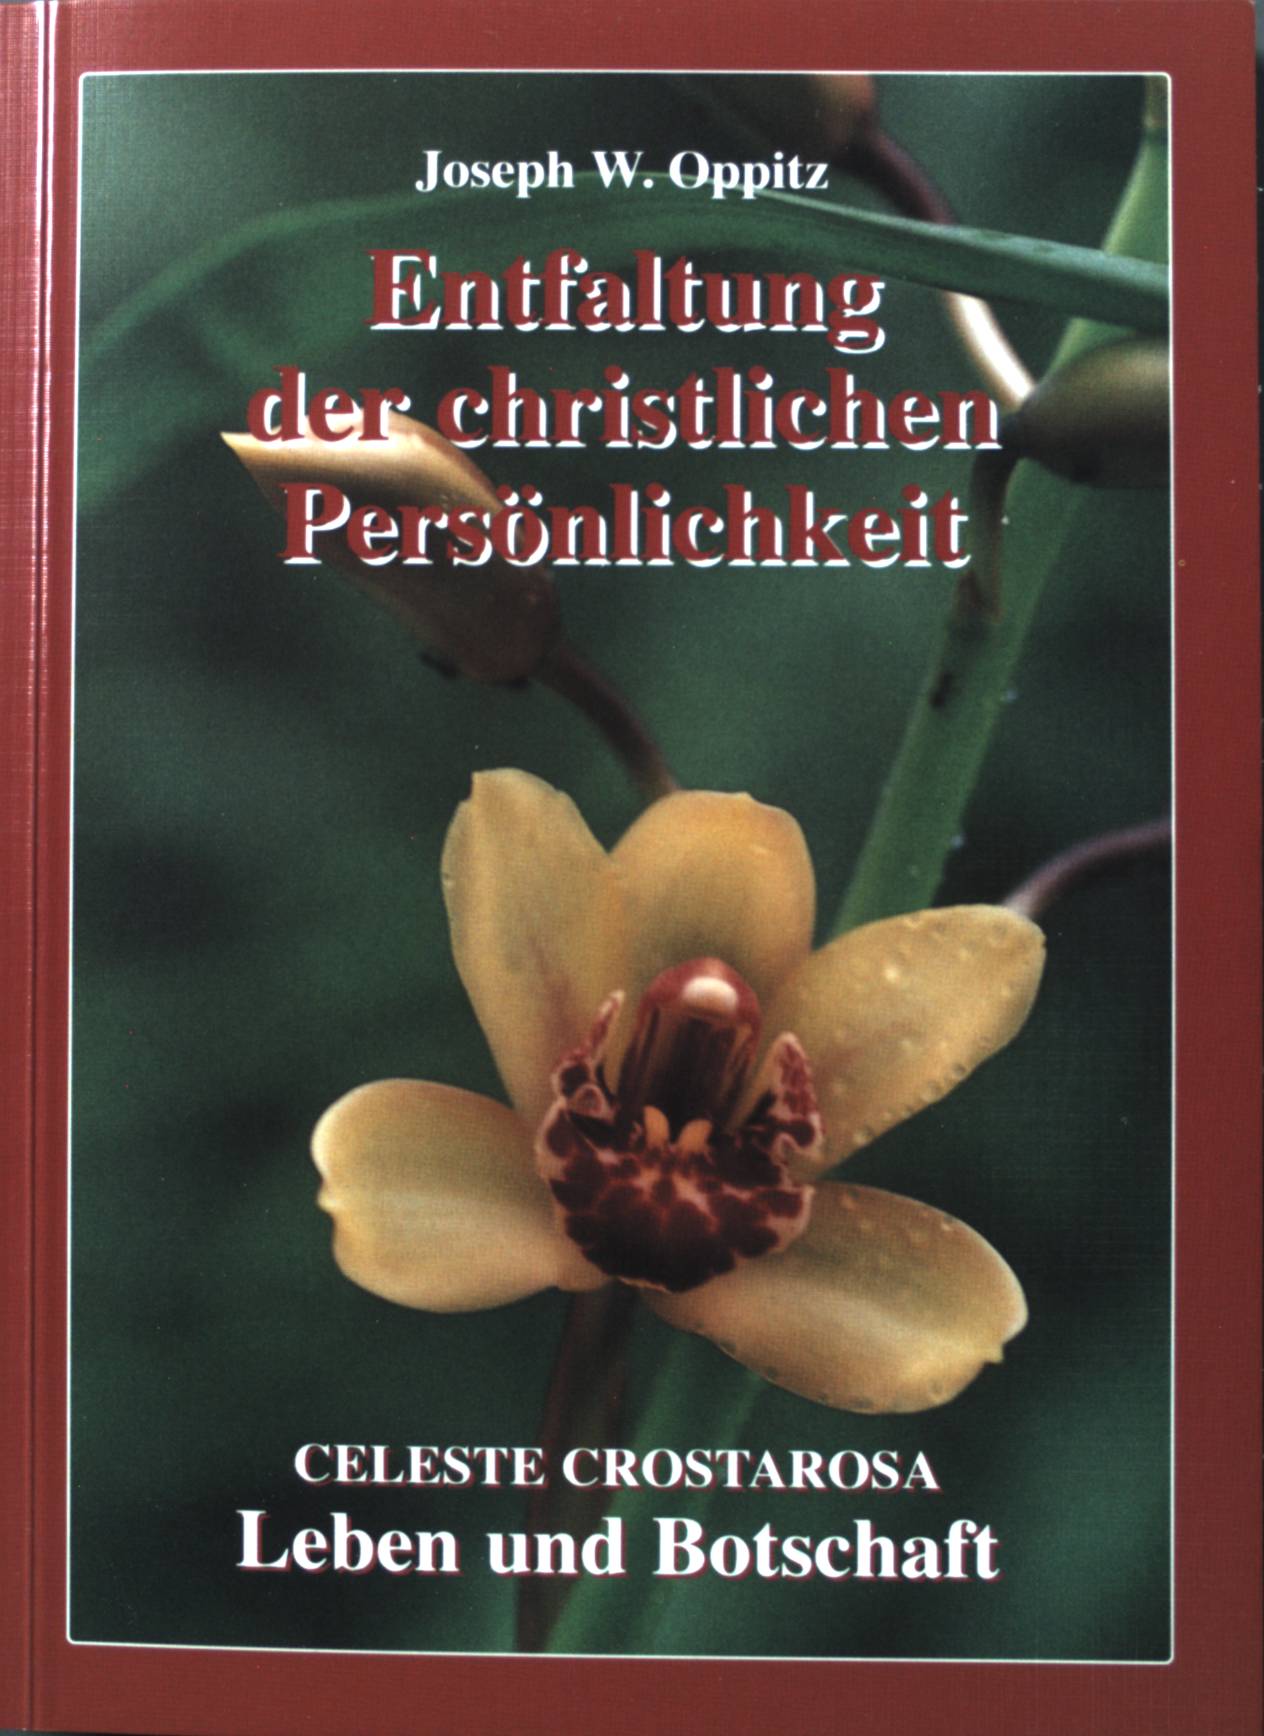 Entfaltung der christlichen Persönlichkeit: Celeste Crostarosa; Leben und Botschaft. - Oppitz, Joseph W.